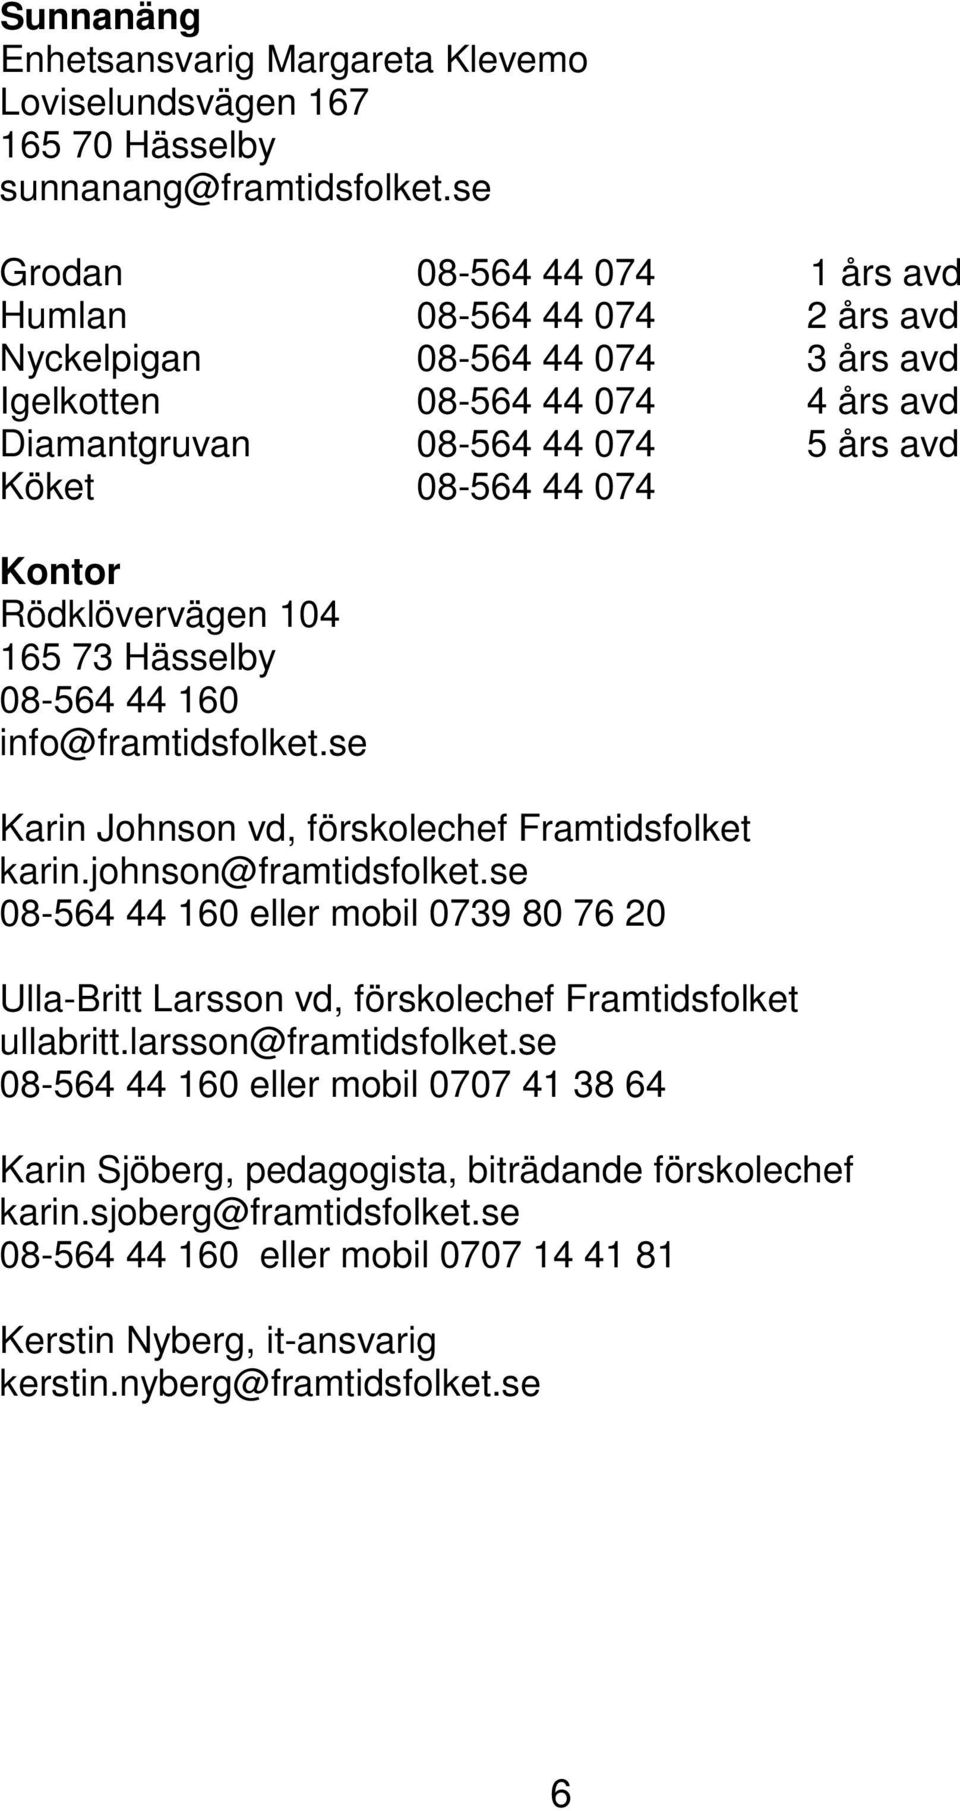 Kontor Rödklövervägen 104 165 73 Hässelby 08-564 44 160 info@framtidsfolket.se Karin Johnson vd, förskolechef Framtidsfolket karin.johnson@framtidsfolket.